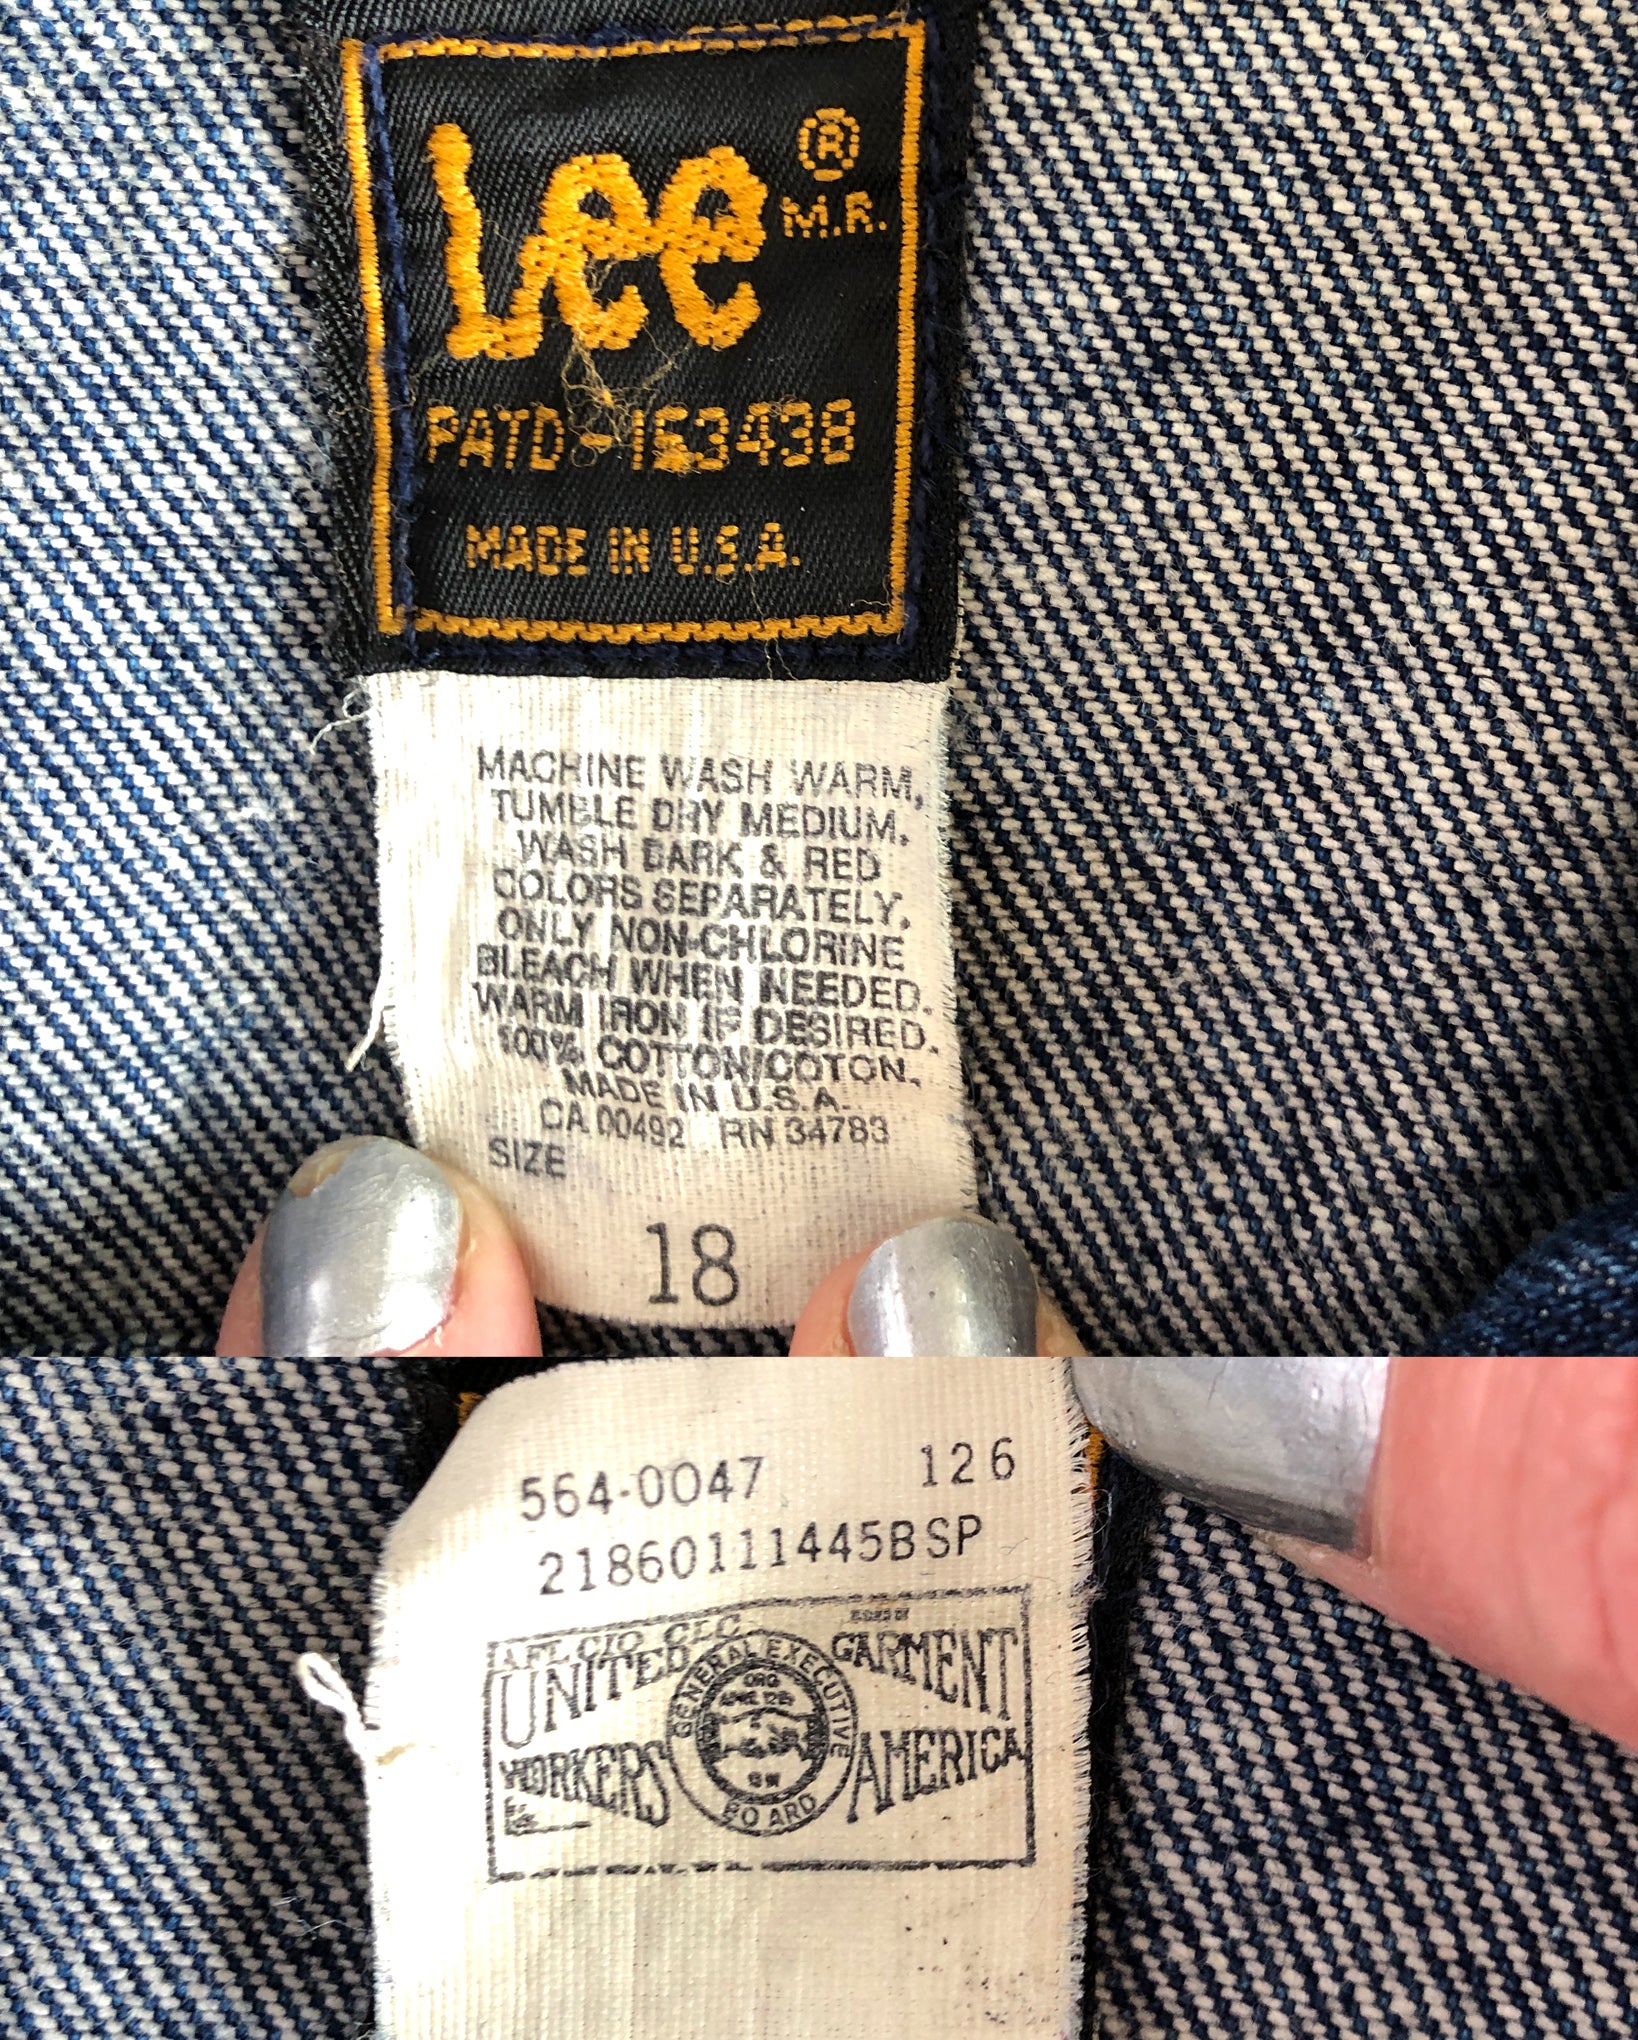 Vintage Lee Rider 220 - J Denim Jacket, Size Small – Covet Vintage